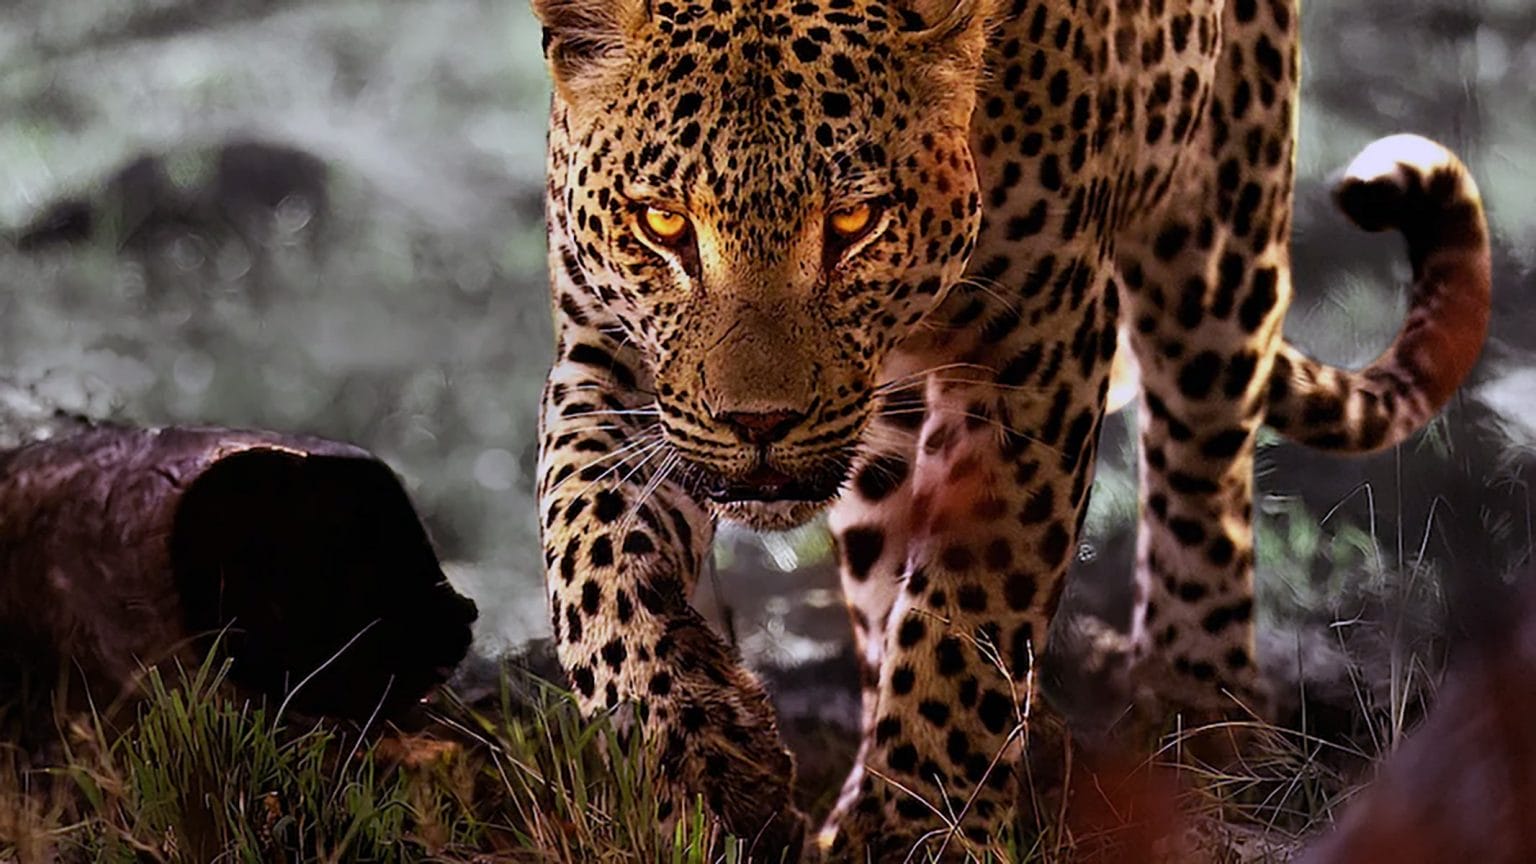 La vita dei leopardi